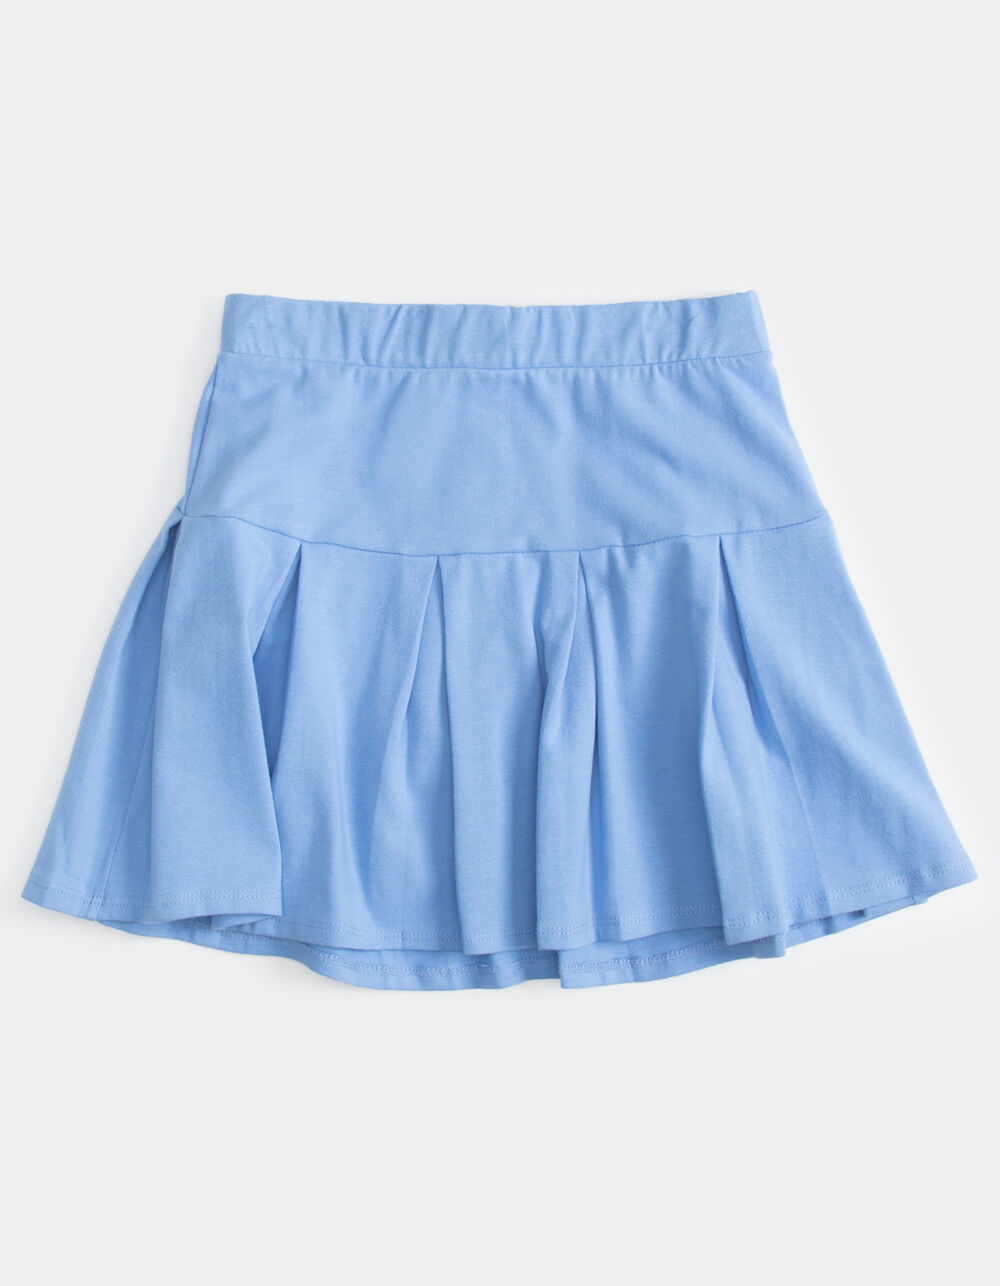 FULL TILT Solid Drop Pleat Girls Blue Tennis Skirt - BLUE | Tillys